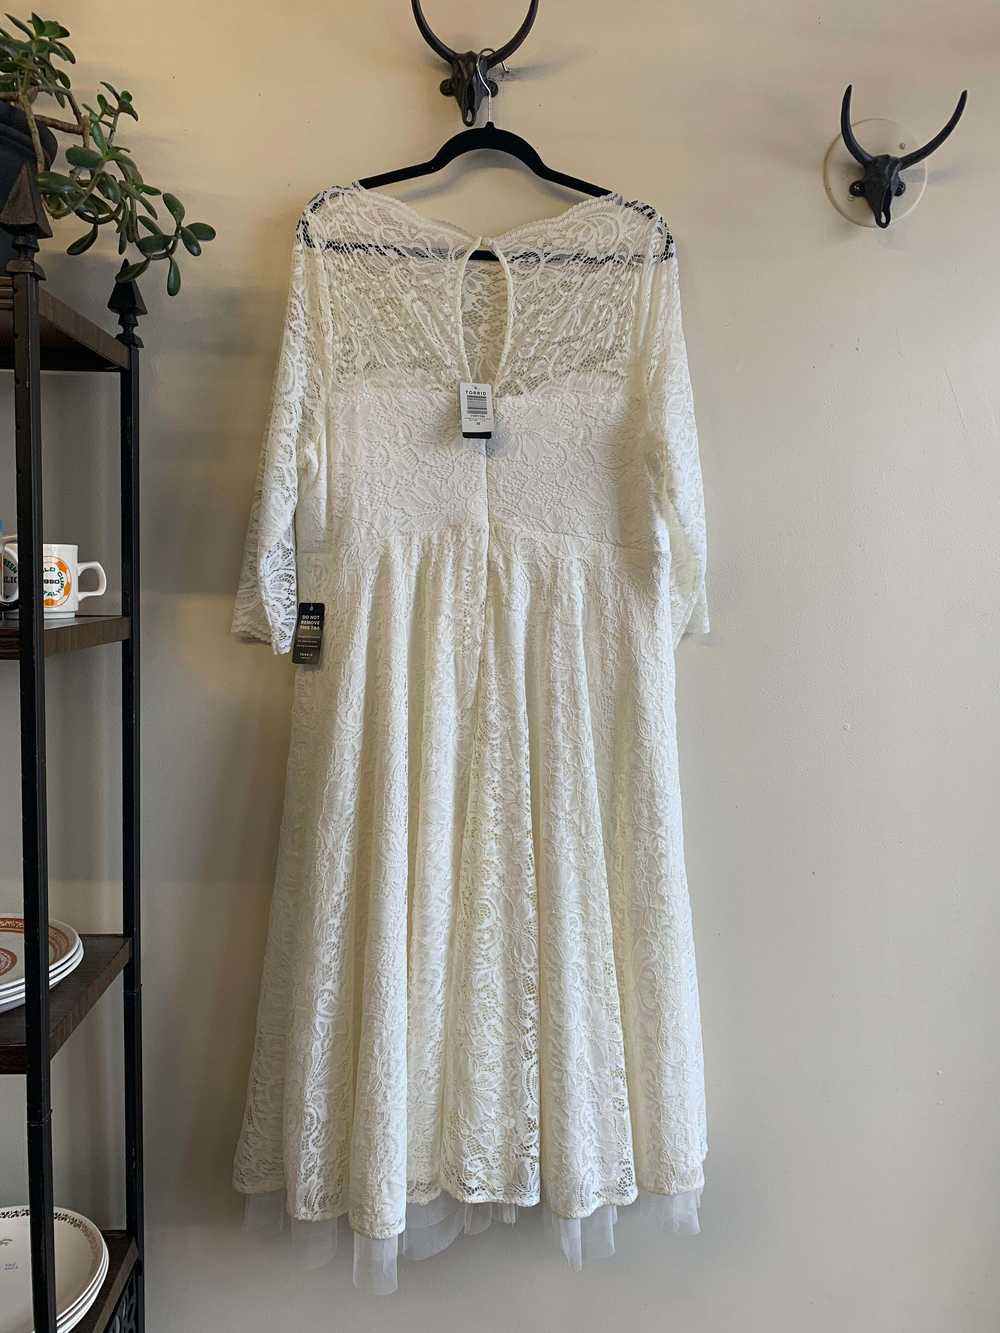 Torrid Ivory Lace Wedding Dress - 2X - image 1